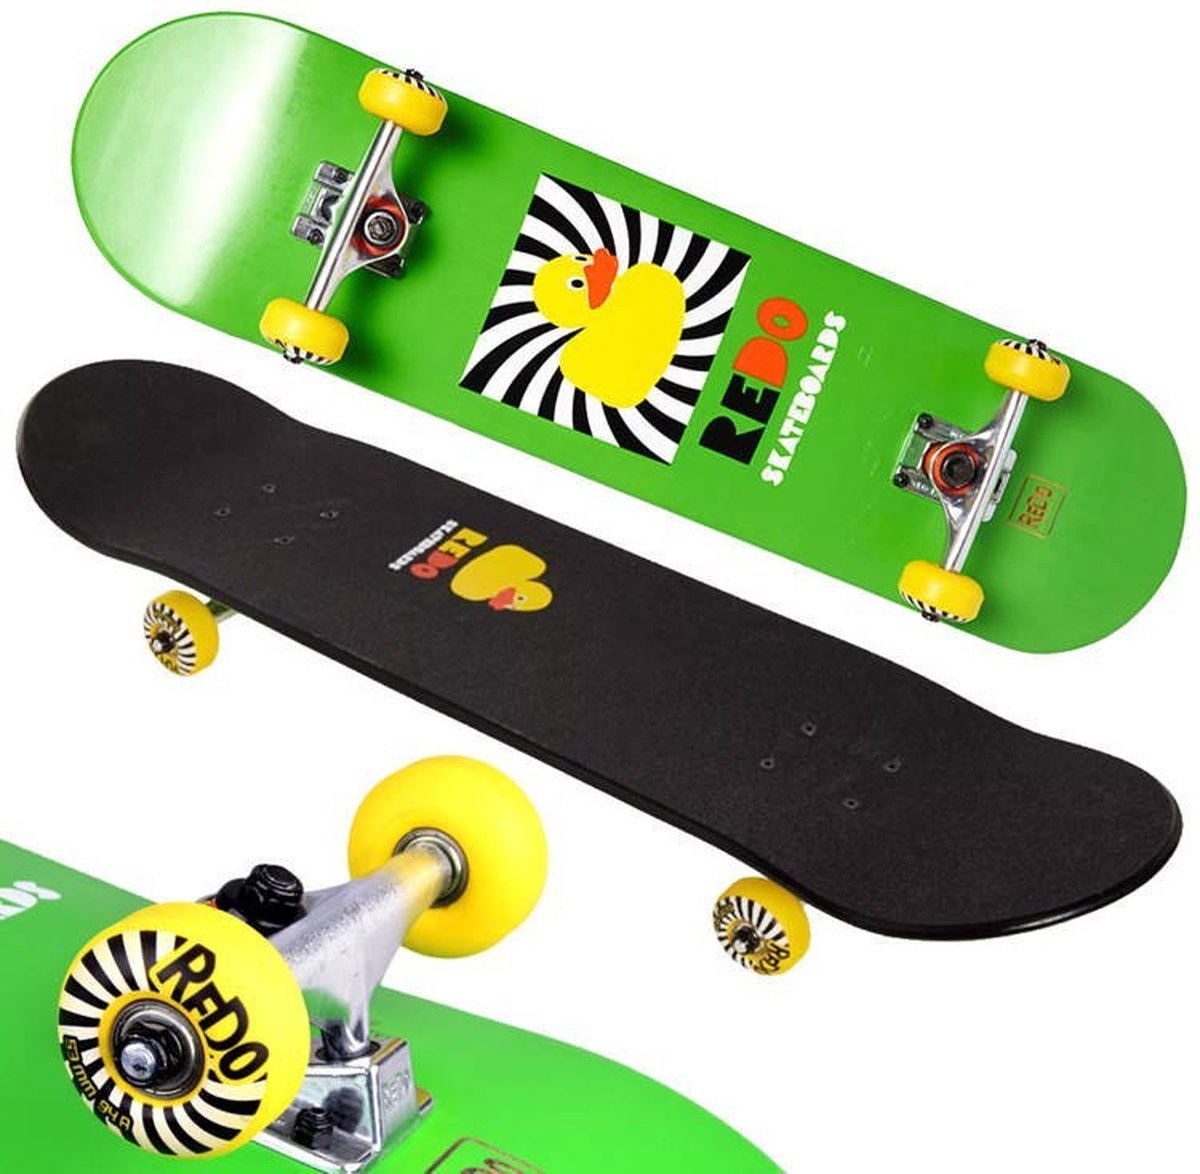 ReDo - Skateboard - Rubber Duck Pop